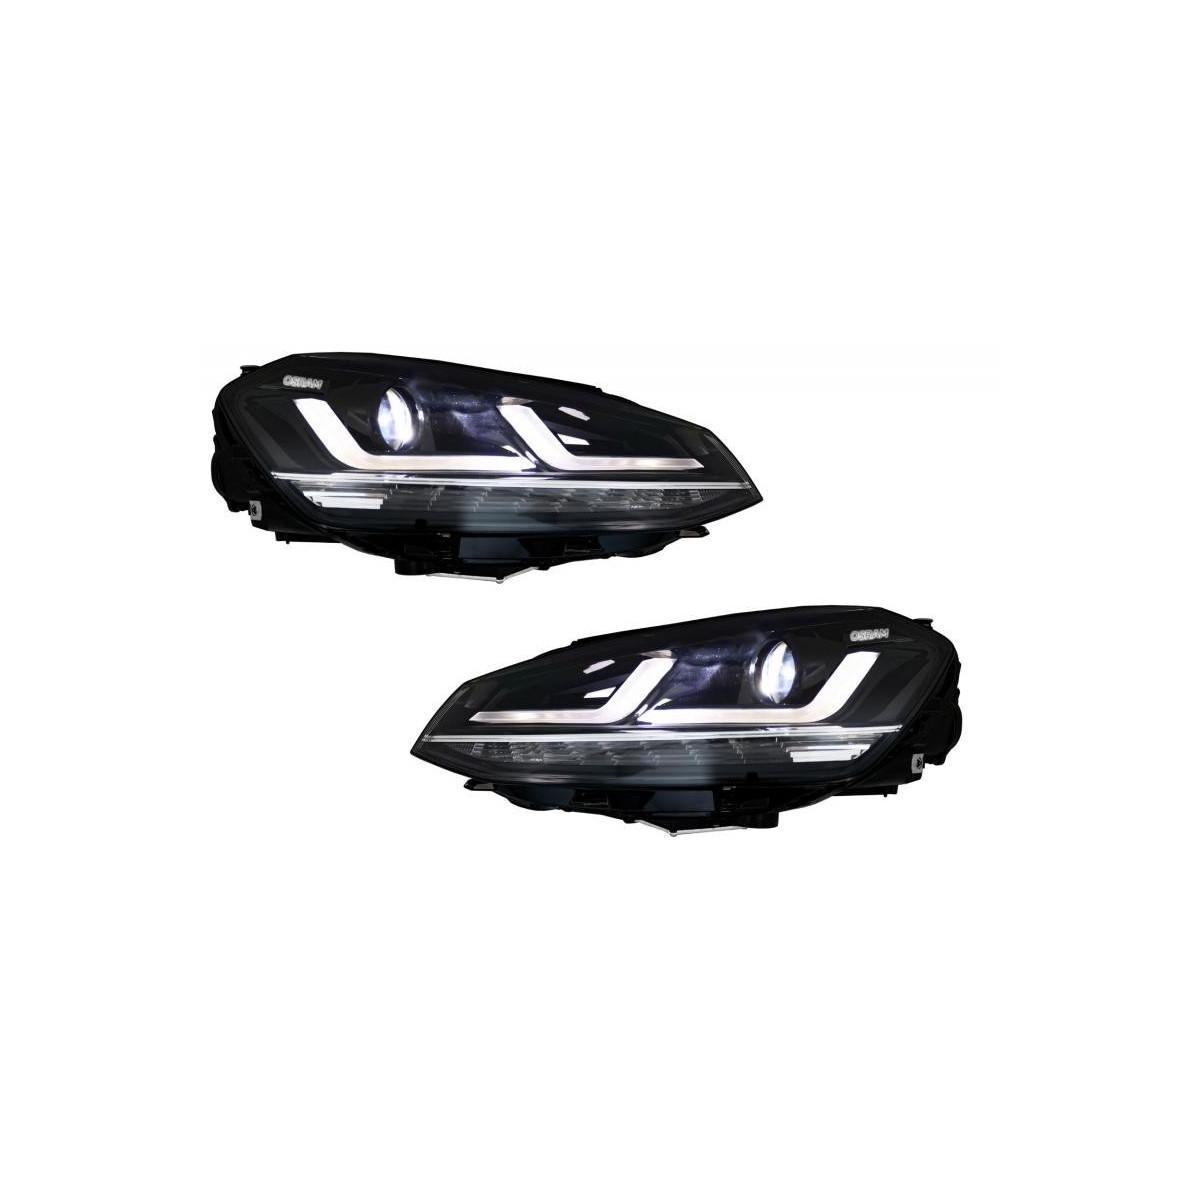 LAMPY PRZEDNIE VW GOLF 7 (12-17) OSRAM LED CHROME